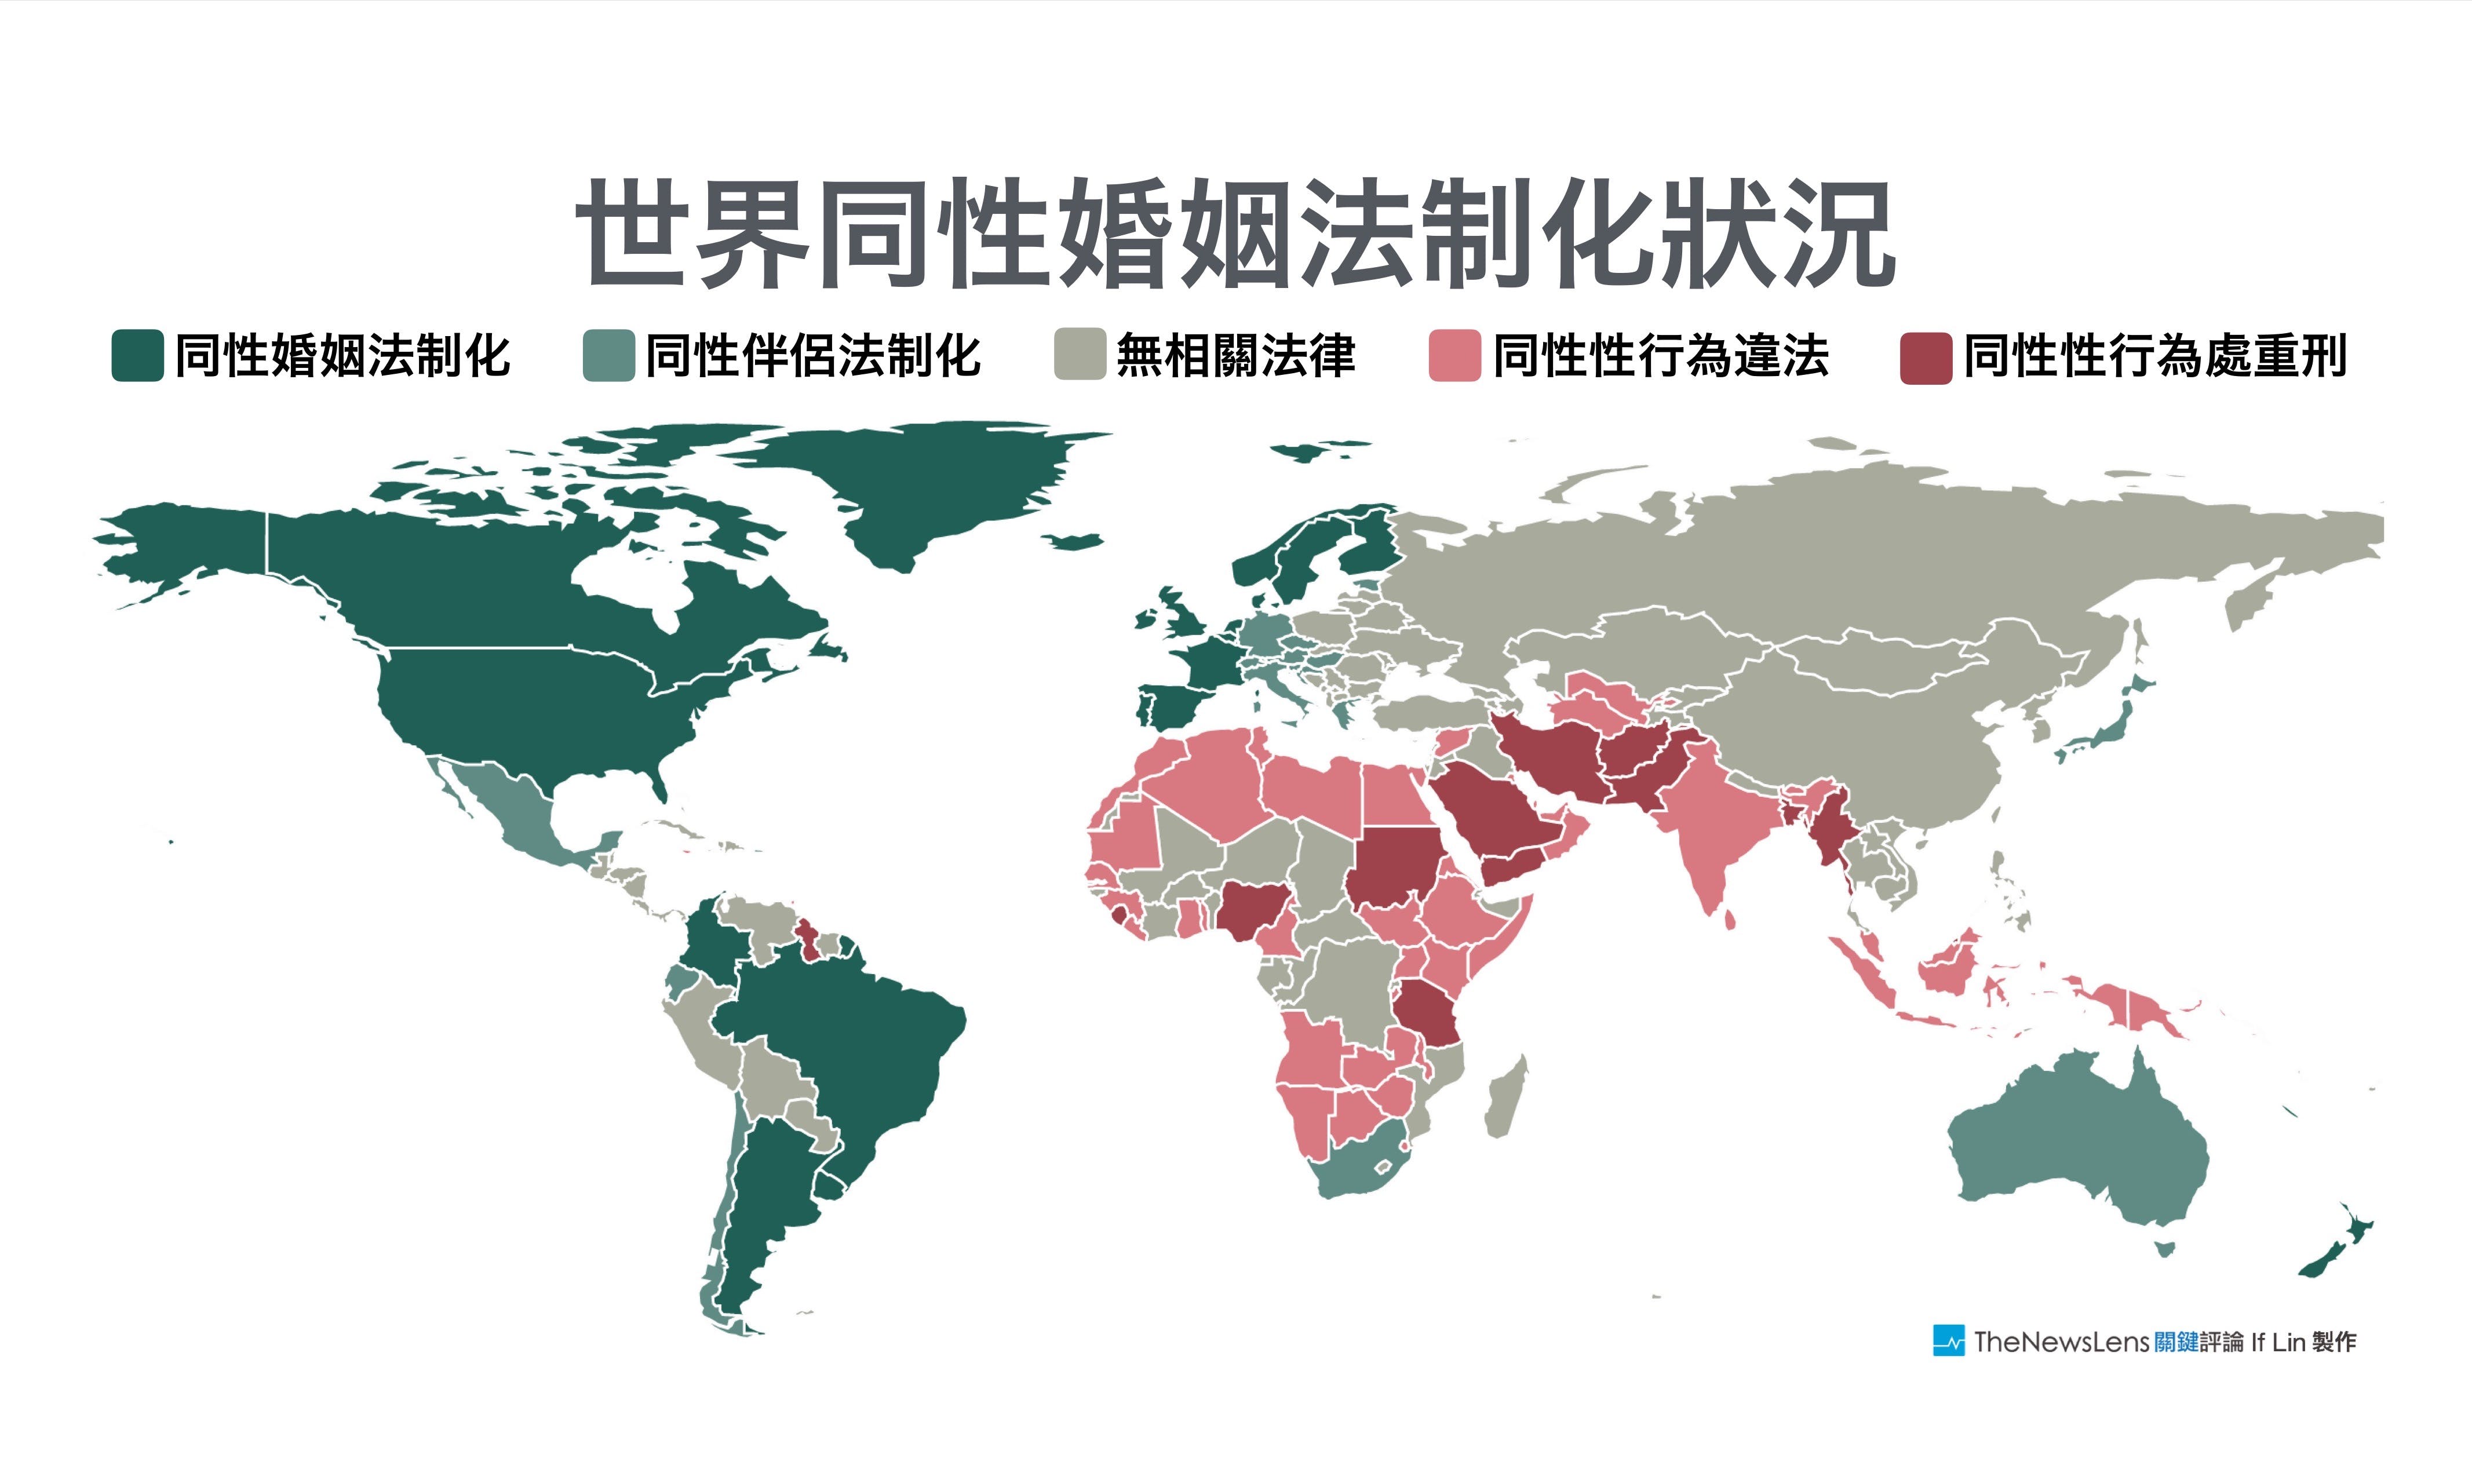 【資訊圖表】一張圖看懂全球195國「同性婚姻」走到哪一步